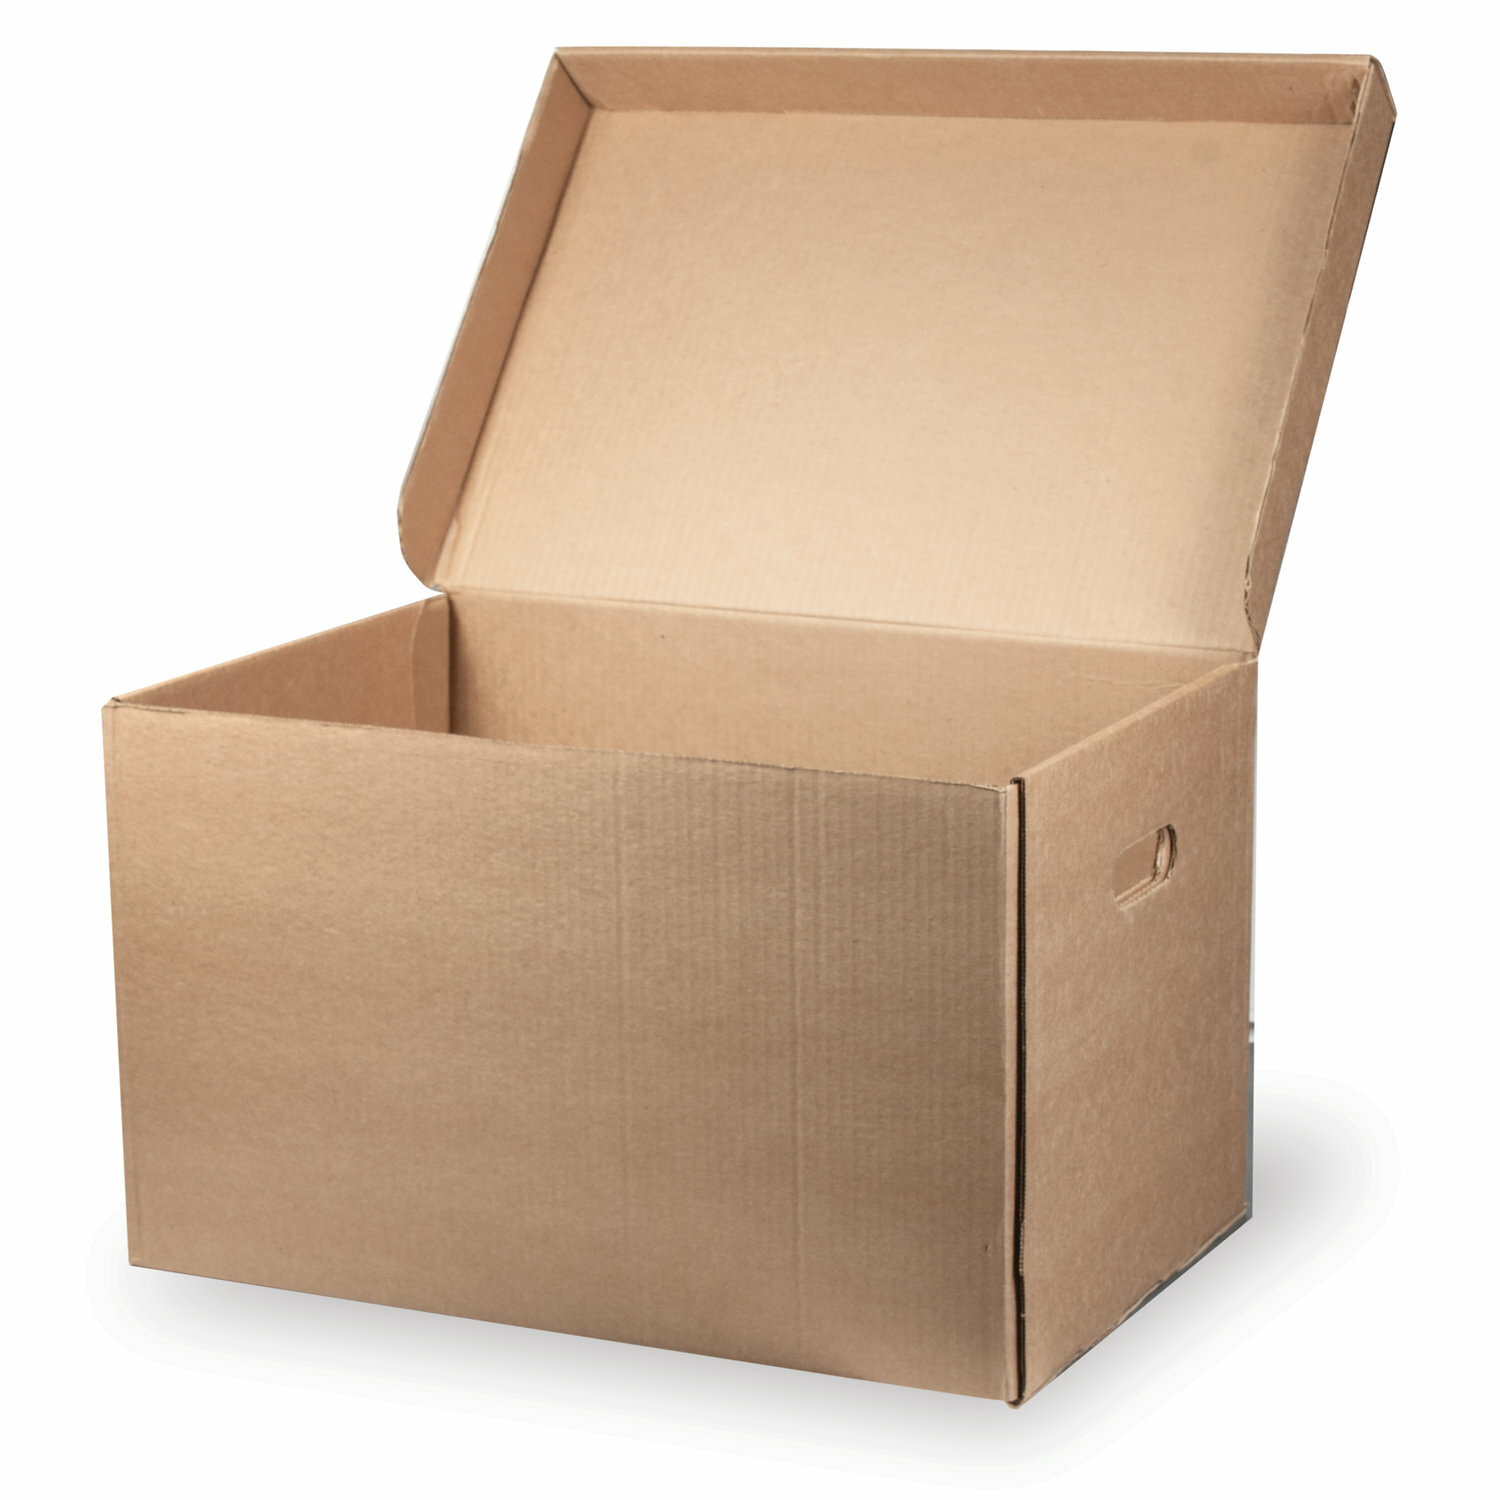 Архивная коробка картонная для документов